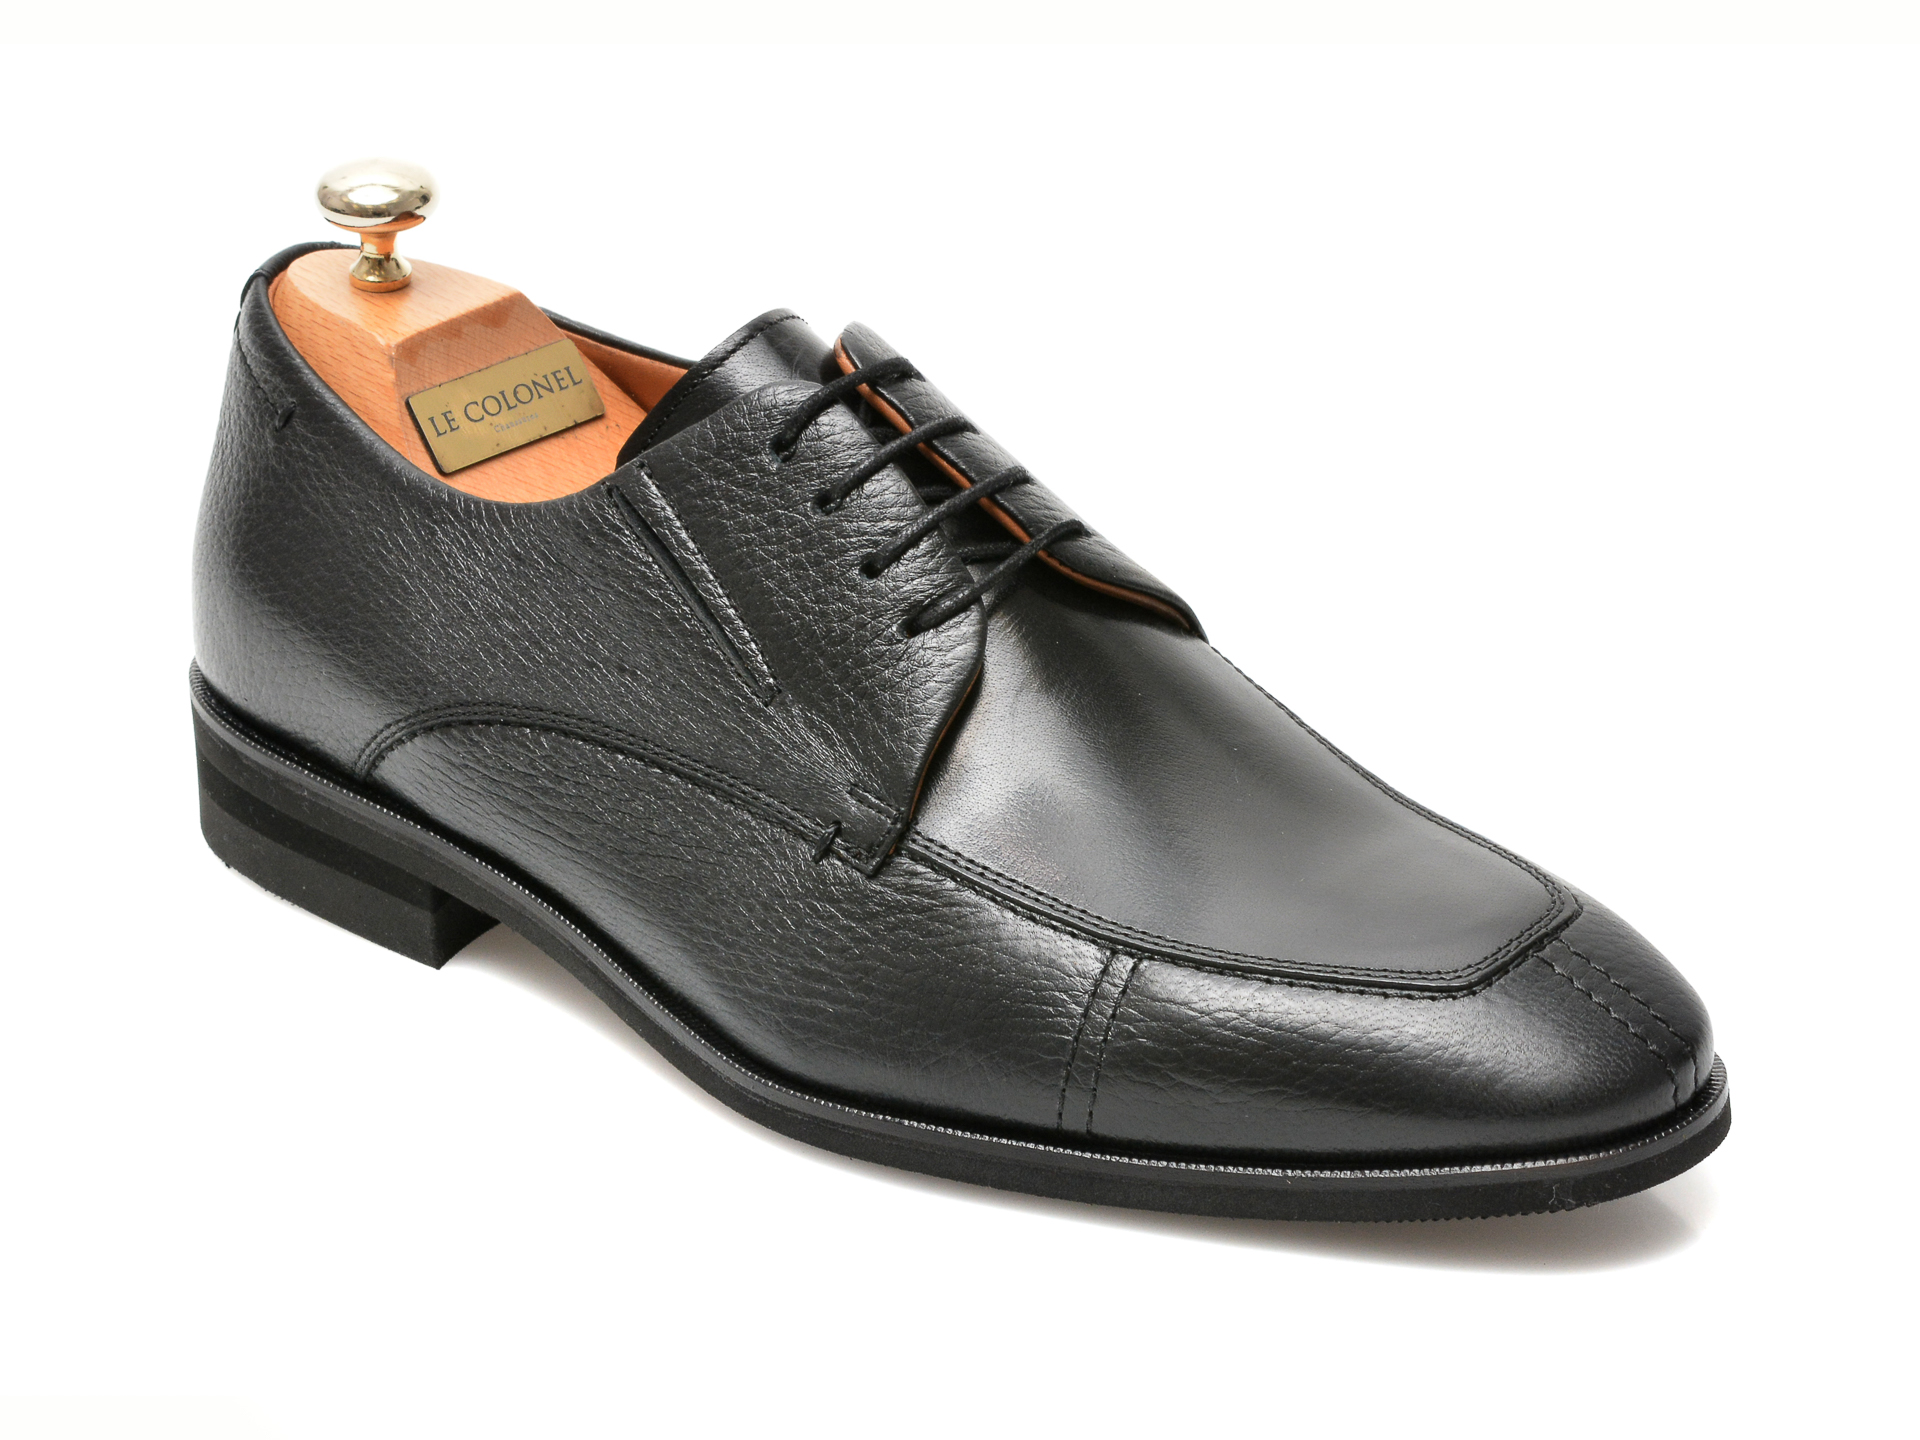 Pantofi LE COLONEL negri, 48761, din piele naturala Le Colonel